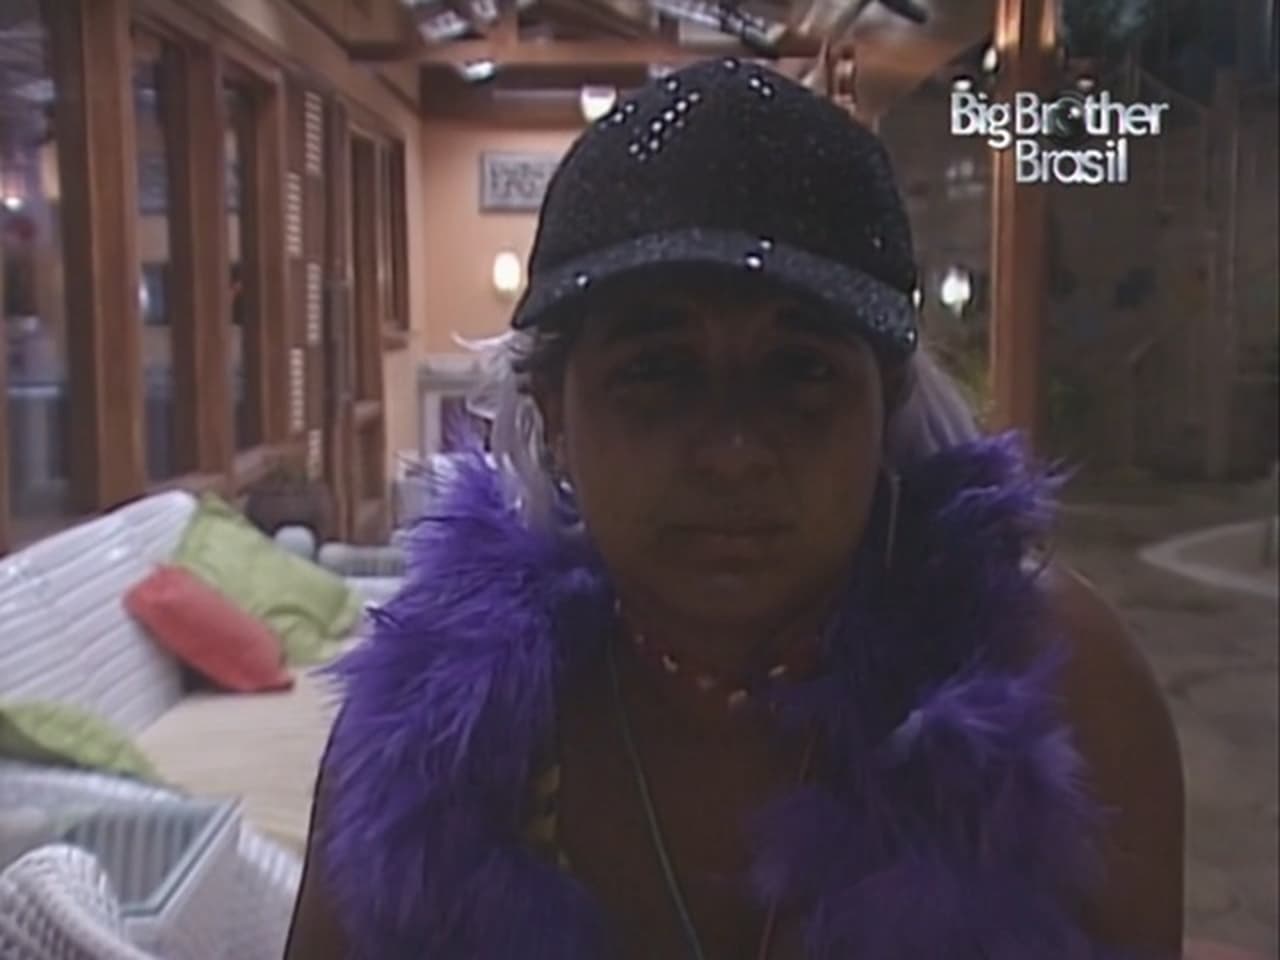 Big Brother Brasil - Season 4 Episode 76 : Episode 76